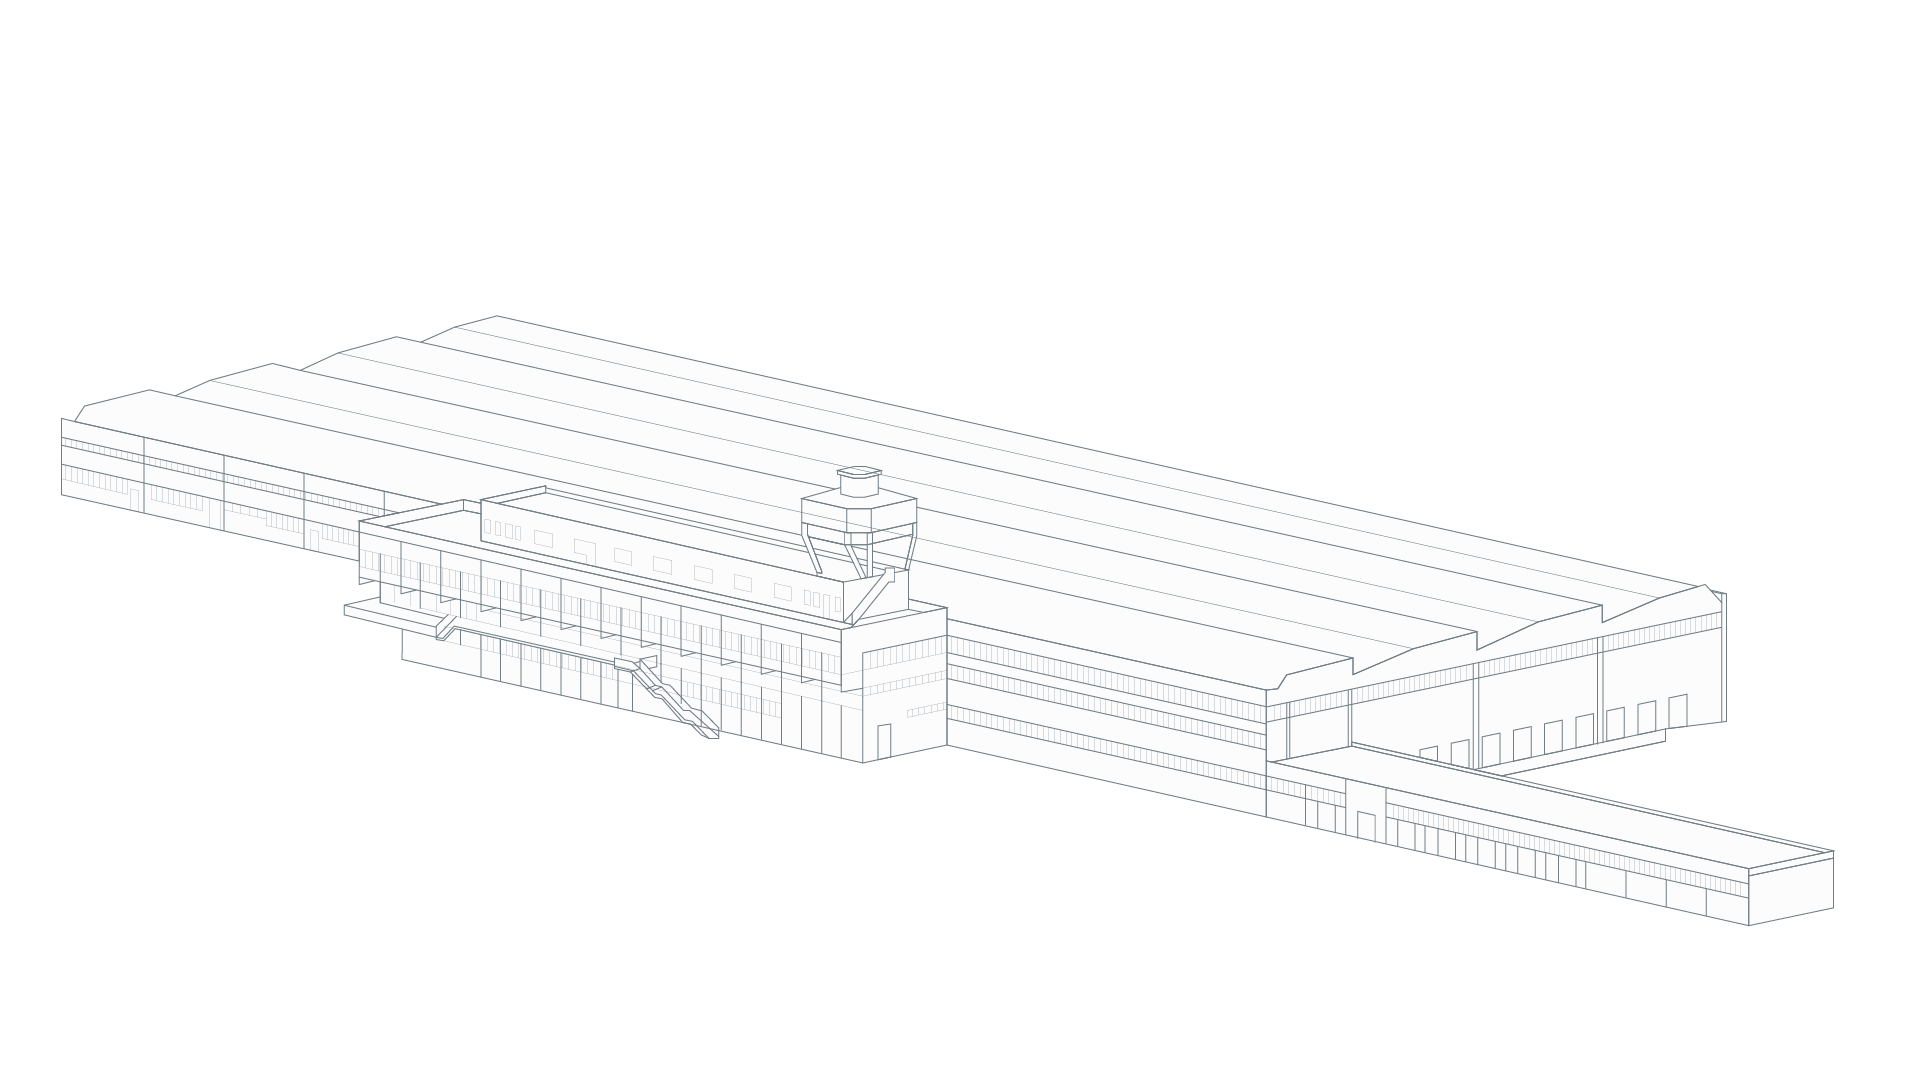 immagine isometrica del magazzino Il Molino di Tor Cervara